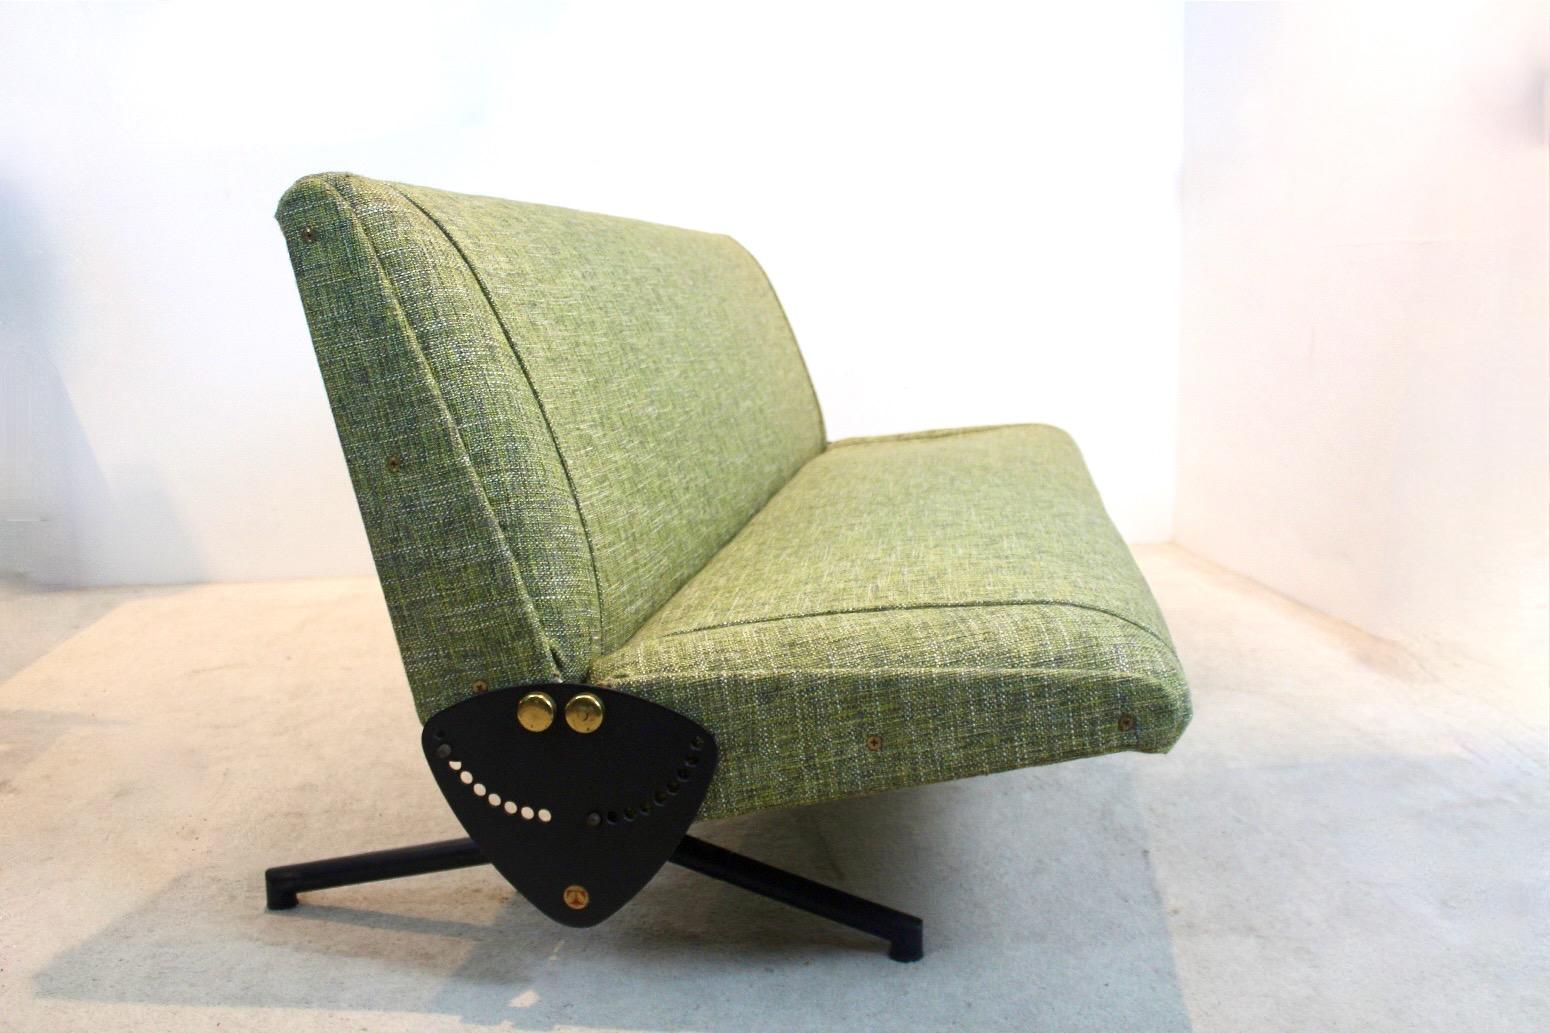 Sofá/Cama de día 'D70', diseñado por Osvaldo Borsani y fabricado por Tecno, Italia 1954. Este sofá D70 personalizable tiene dos alas pivotantes, un armazón metálico muy estable y una preciosa tapicería de tela verde oliva fresca. El mecanismo de